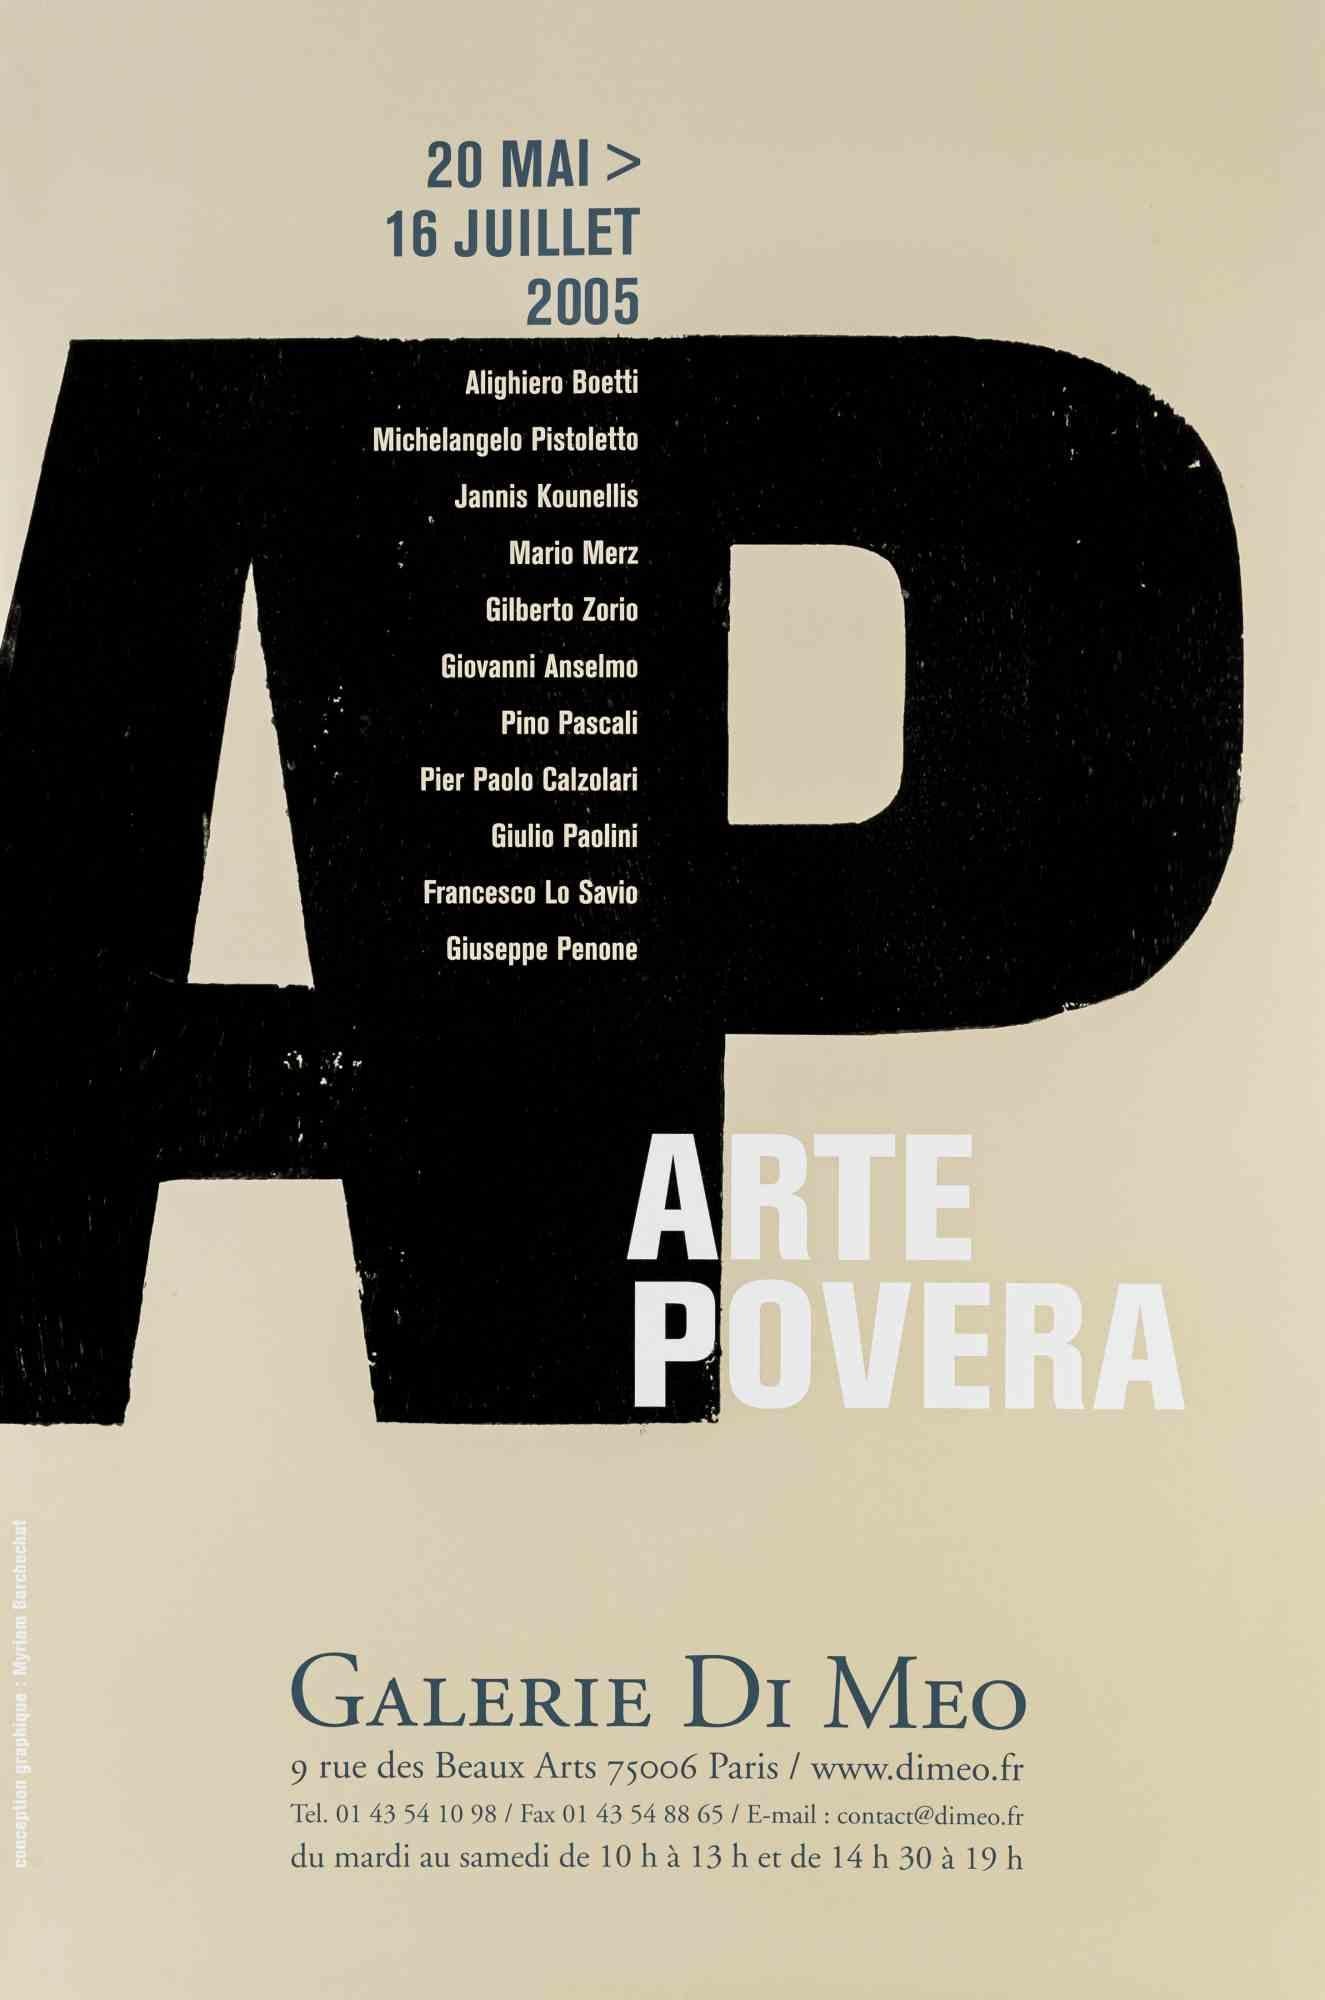 Unknown Figurative Print -  Arte Povera Exhibition - Galerie Di Meo, Paris - Poster - 2005